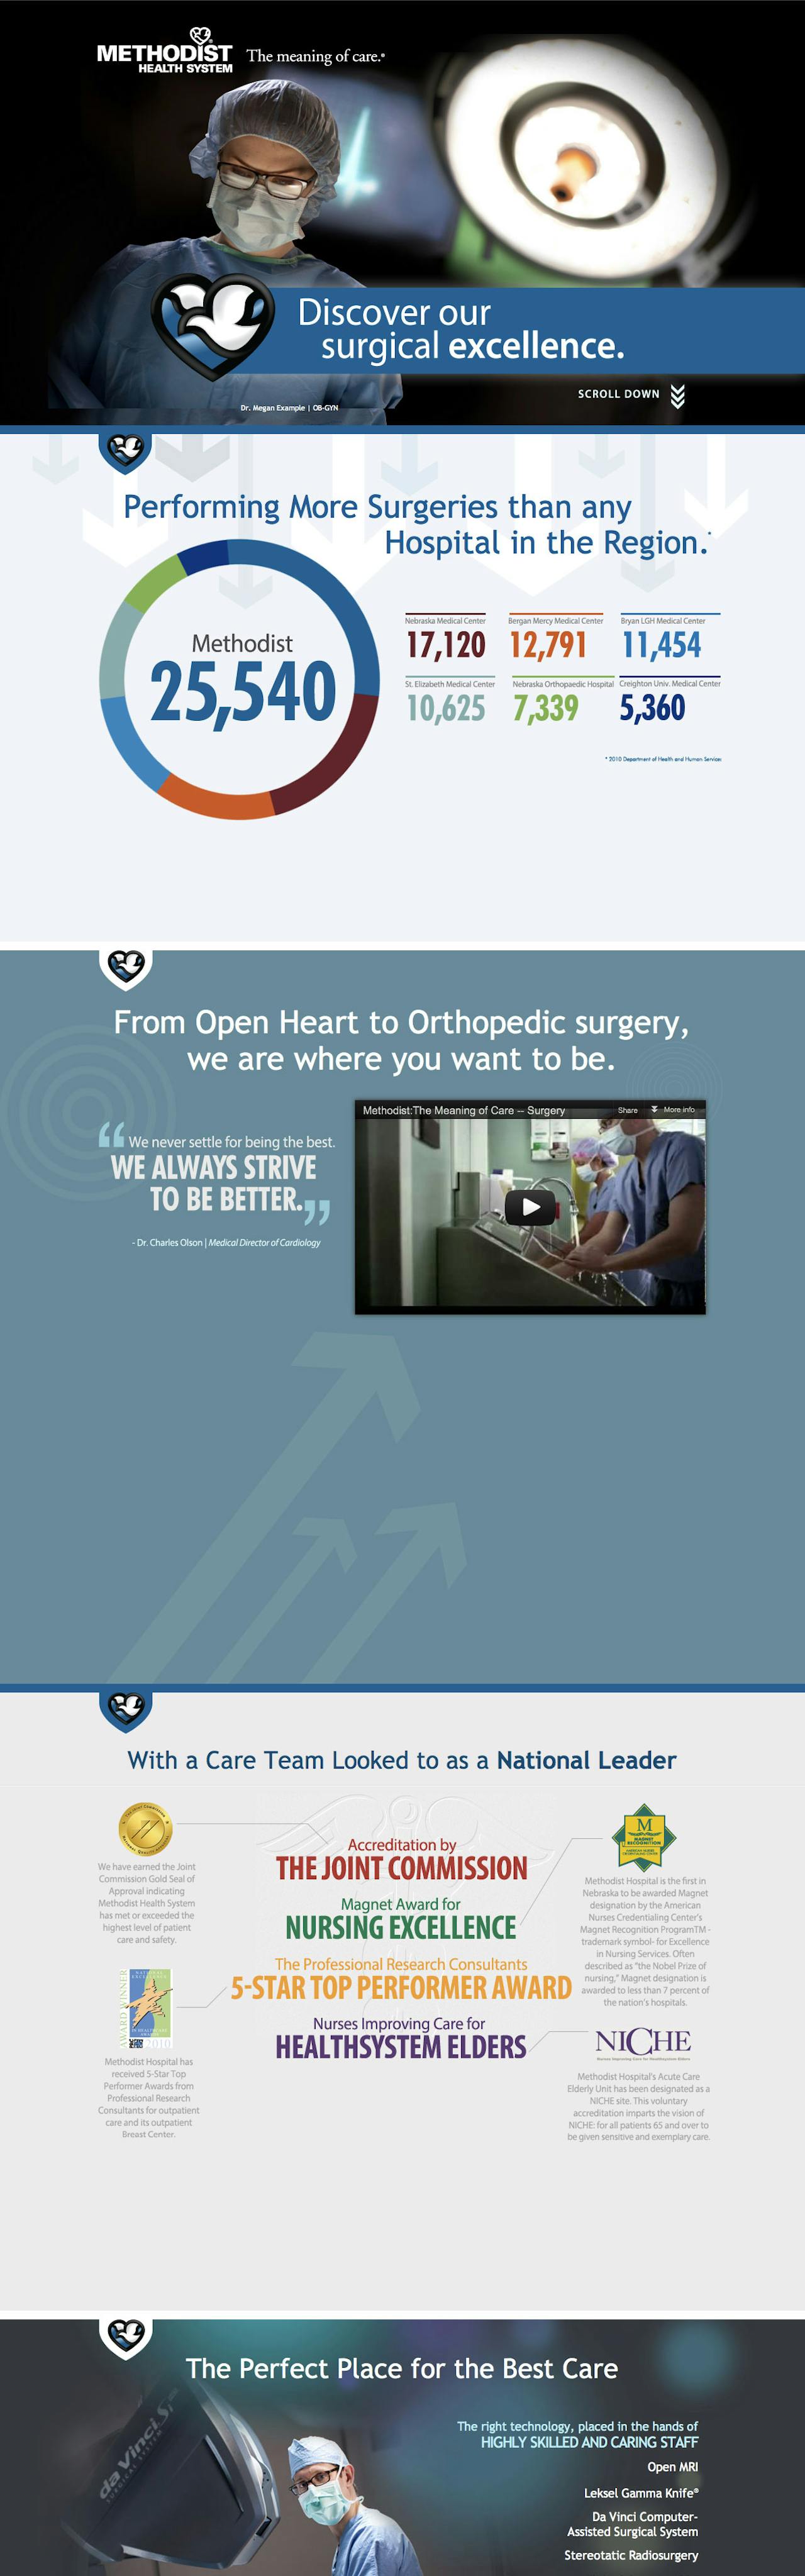 Methodist Surgery Services Website Screenshot